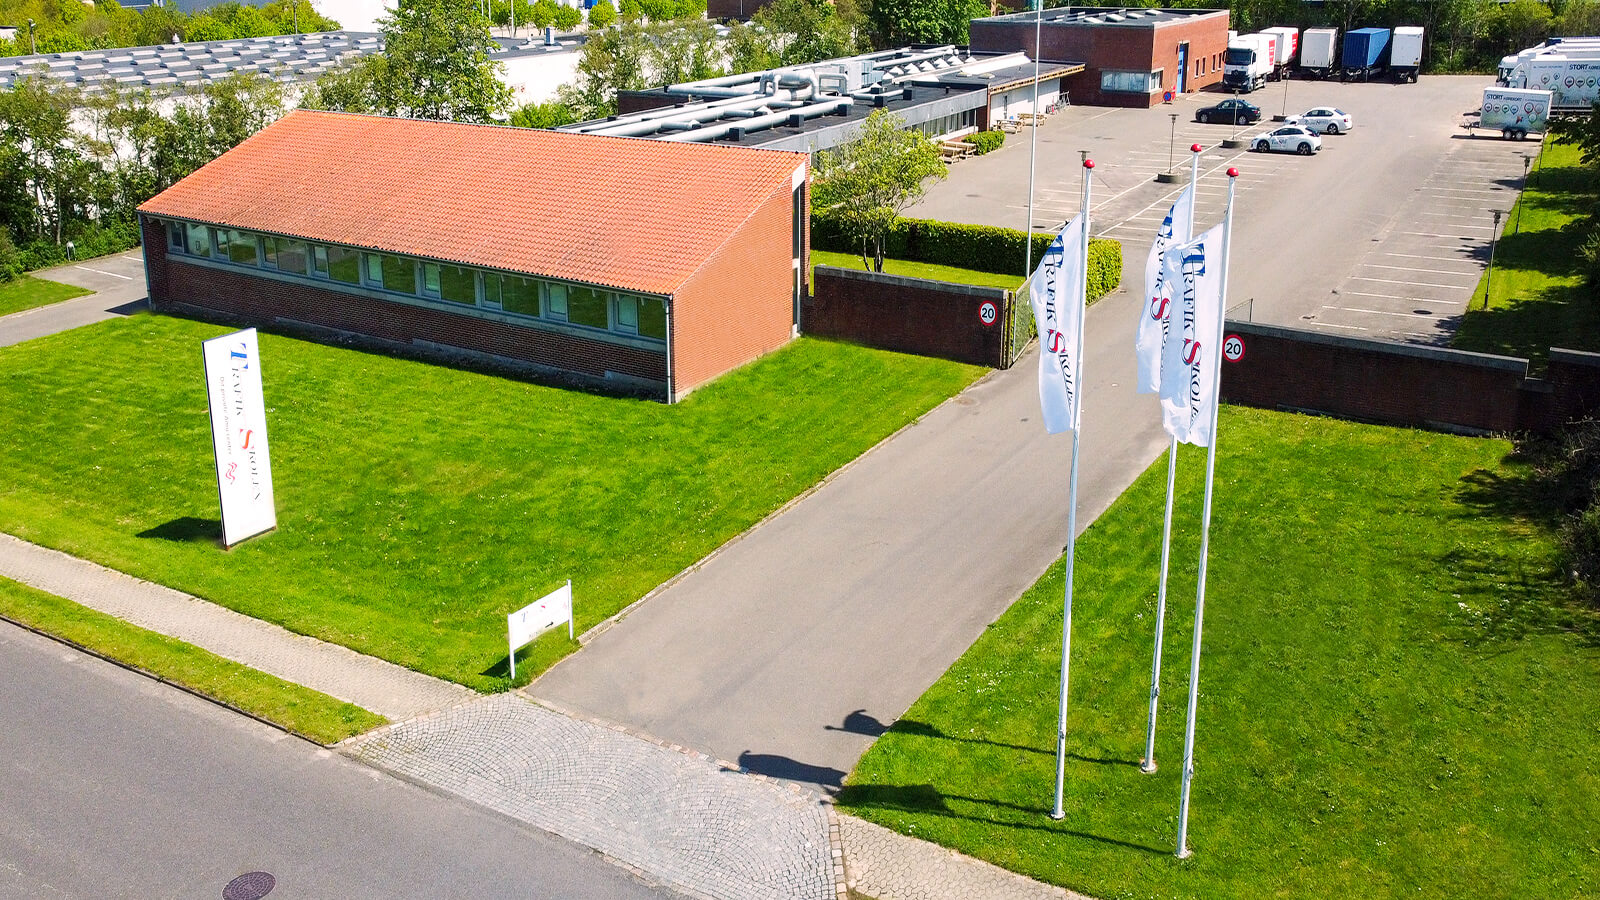 Trafikskolen på ravnevej i esbjerg med amu kurser for alle